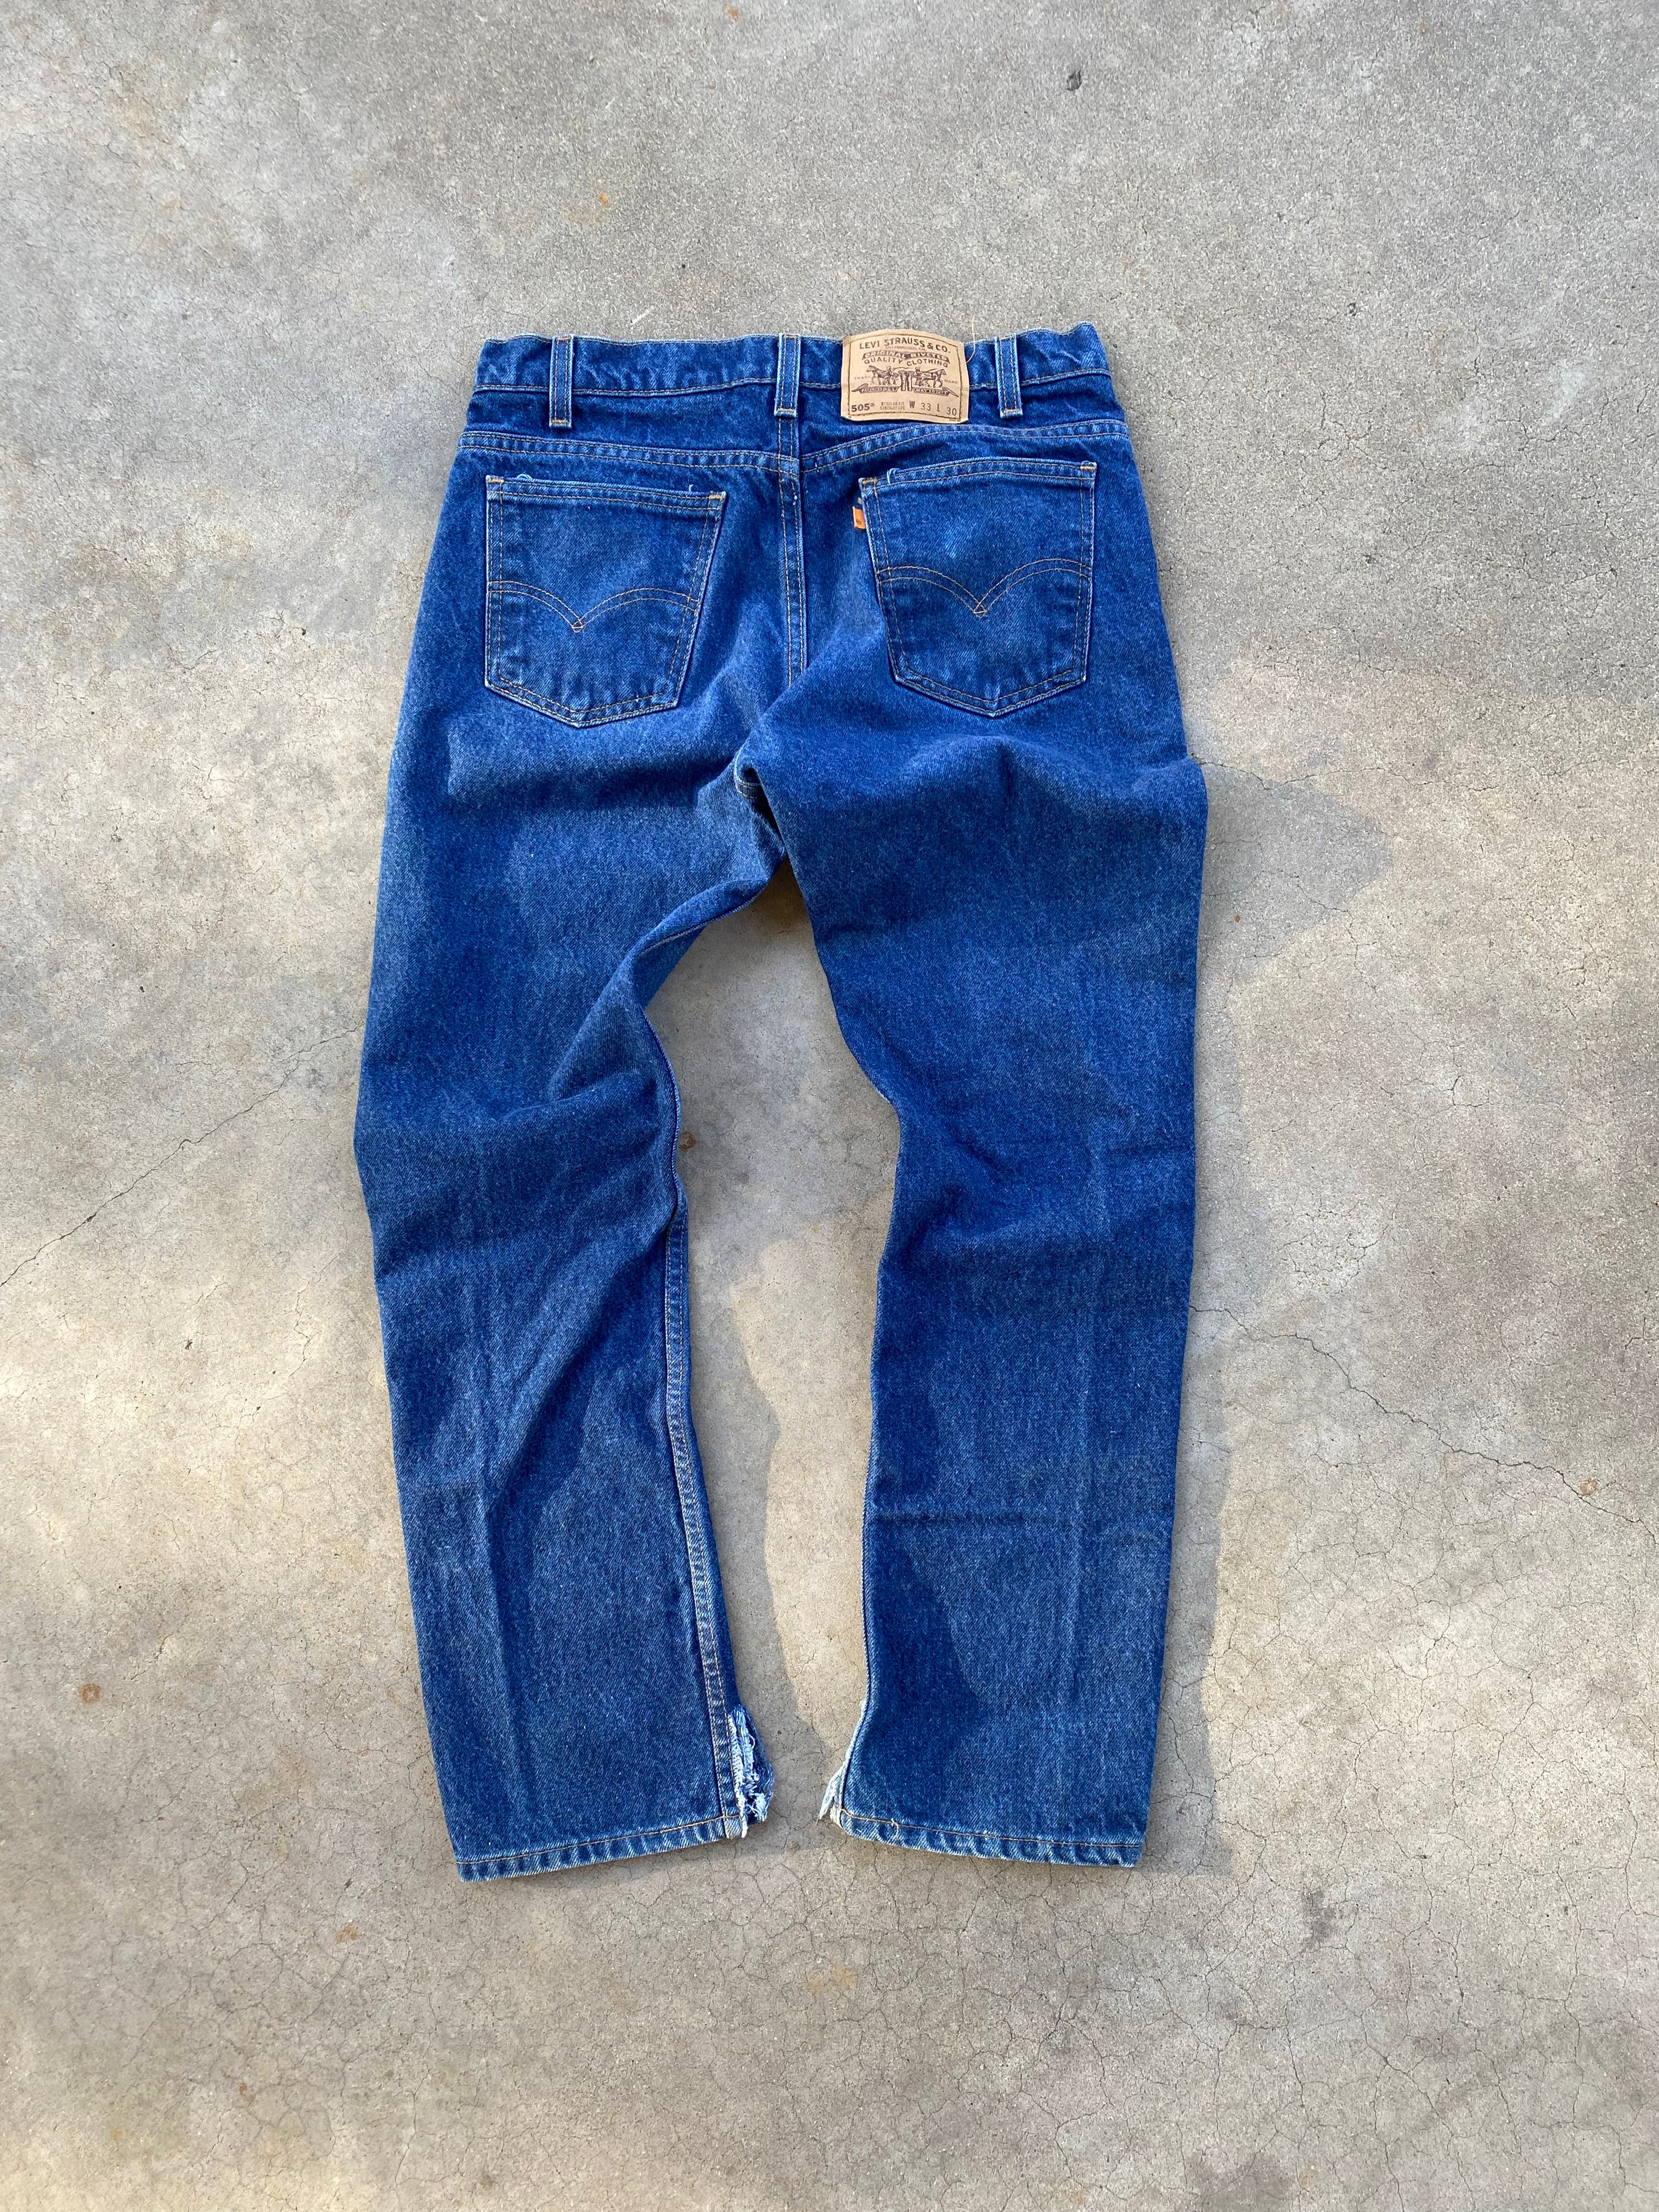 1996 Levi’s 505 Jeans (32"x28.5")